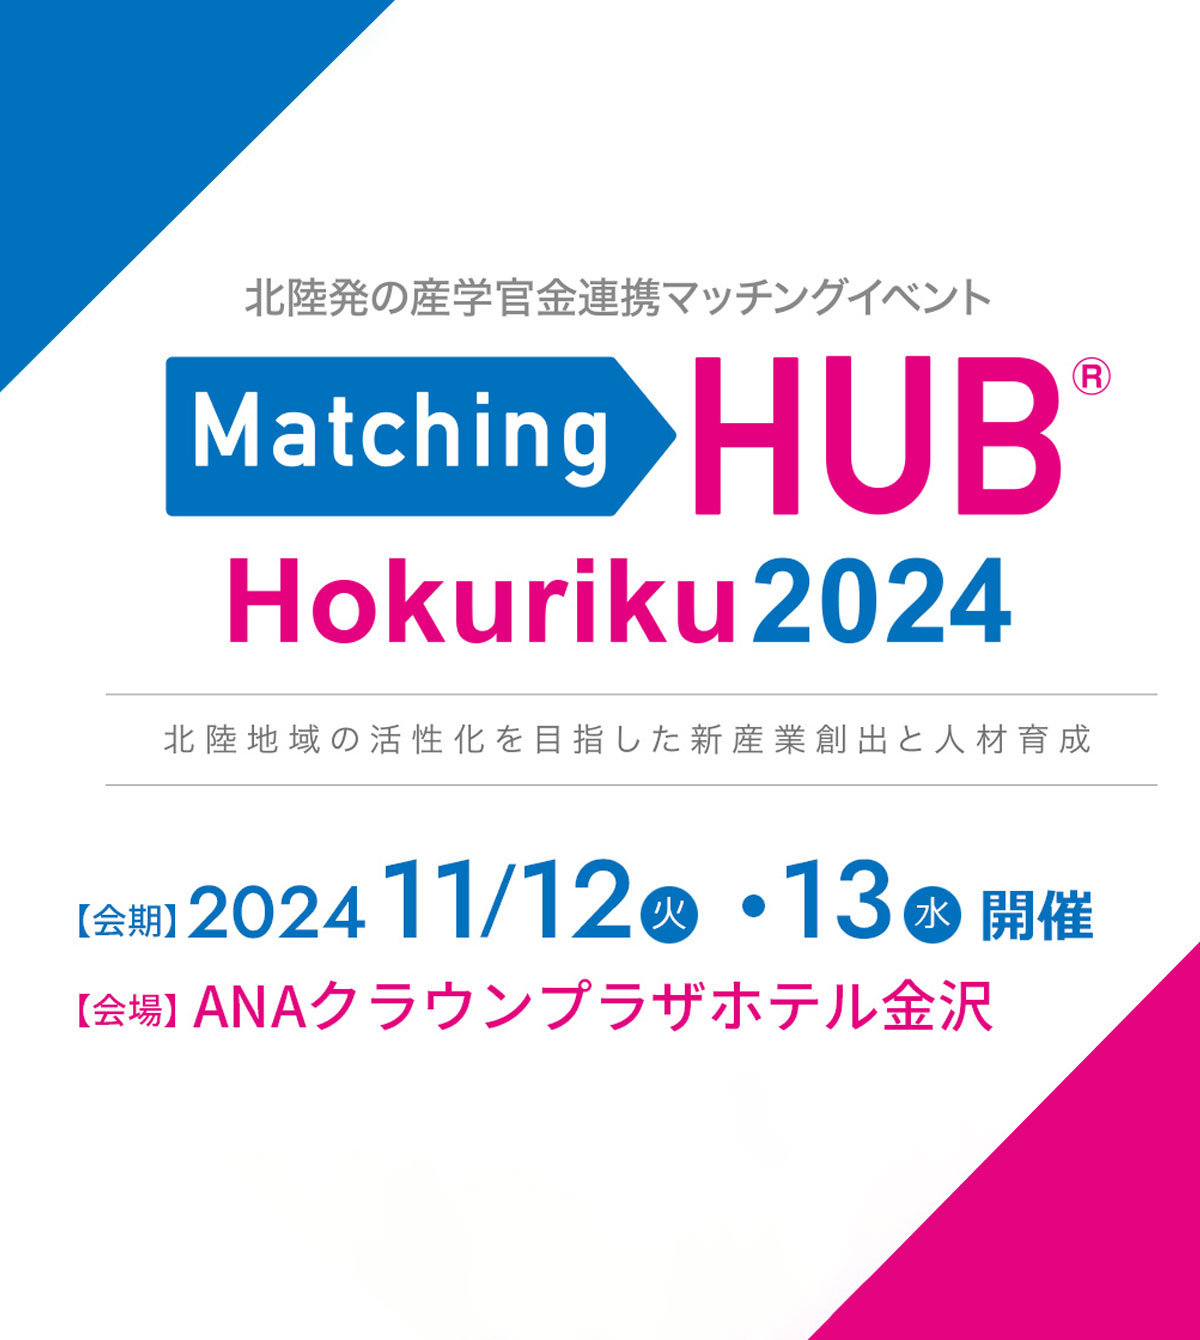 Matching HUB Hokuriku 2024